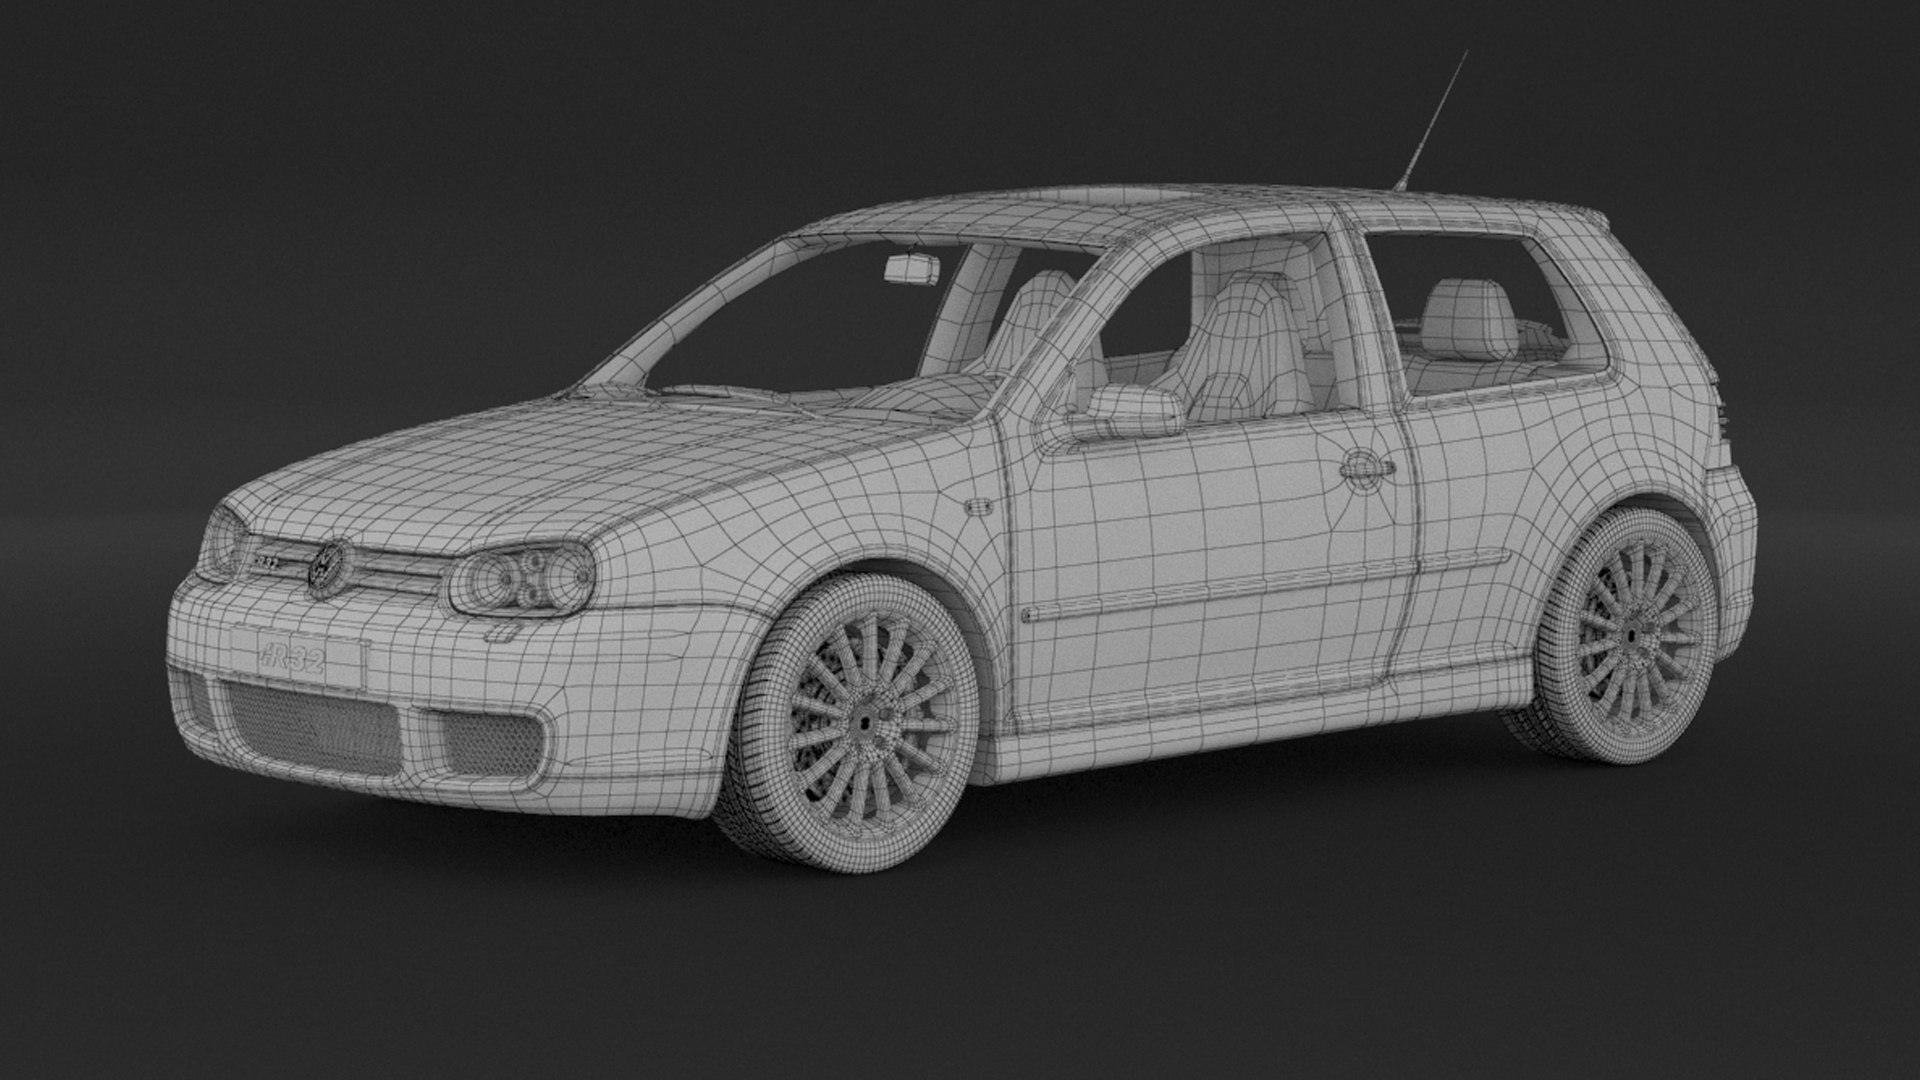 STL file Volkswagen Golf IV R32 2004 🚗・3D printer design to